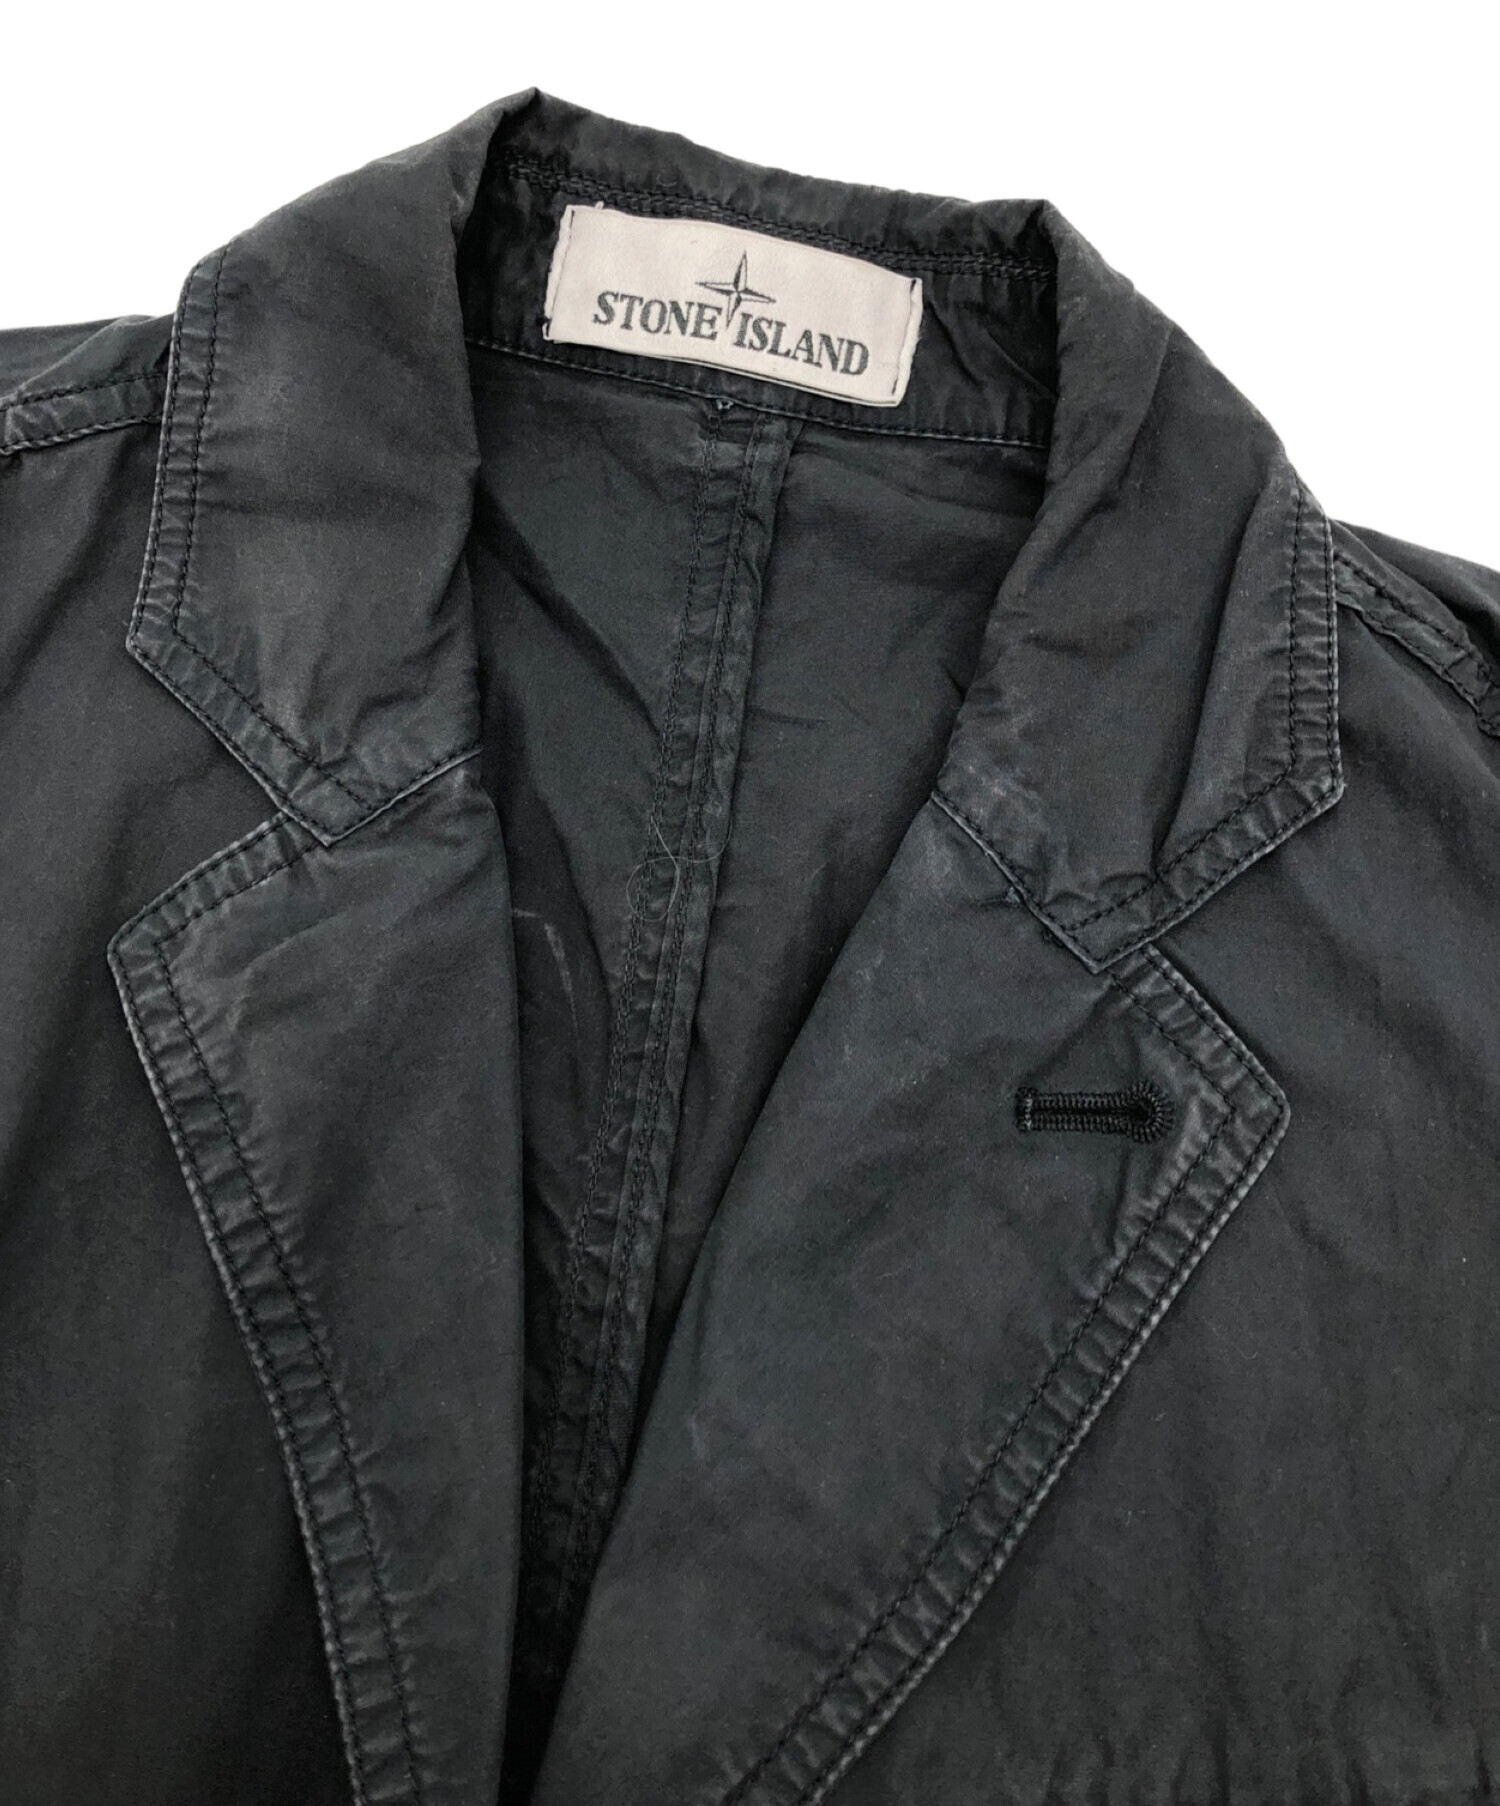 STONE ISLAND (ストーンアイランド) フィールドジャケット ブラック サイズ:XS